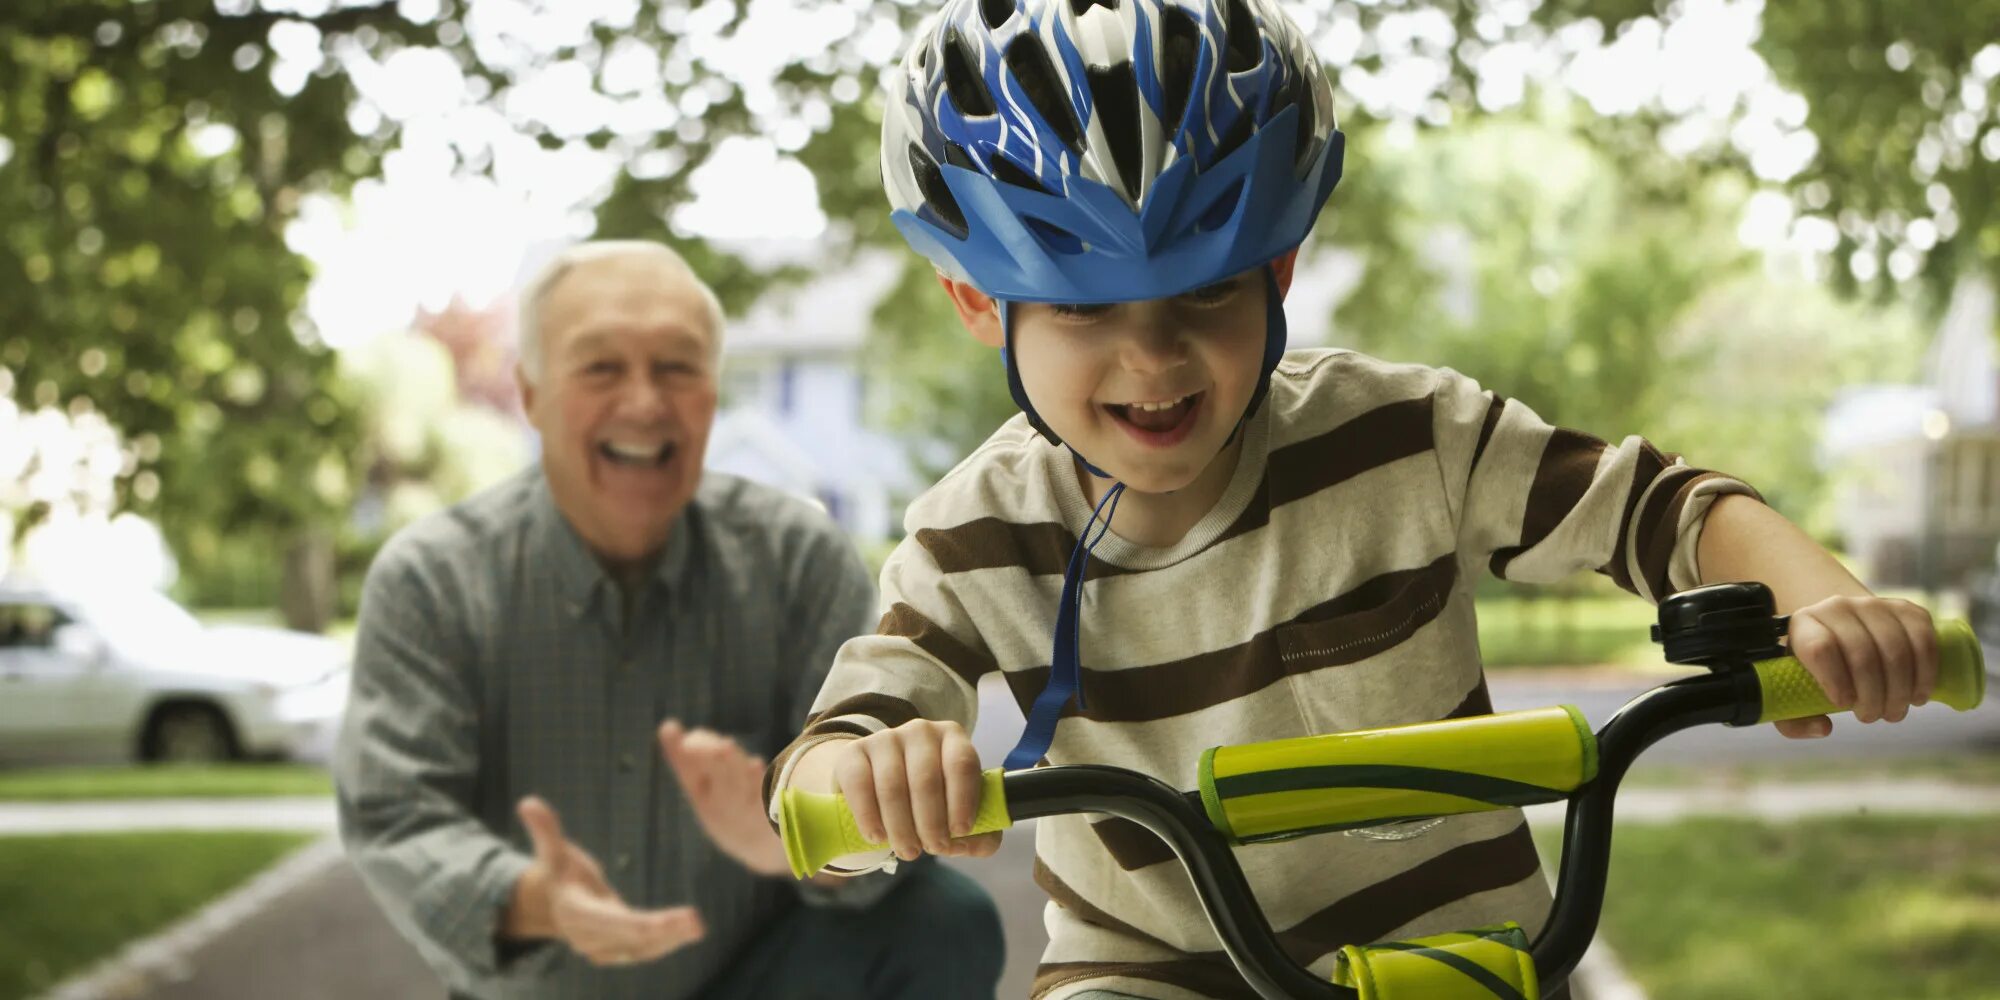 The children ride bikes. Дети с велосипедом. Папа учит кататься на велосипеде. Езда на велосипеде дети. Дети катаются на велосипеде.